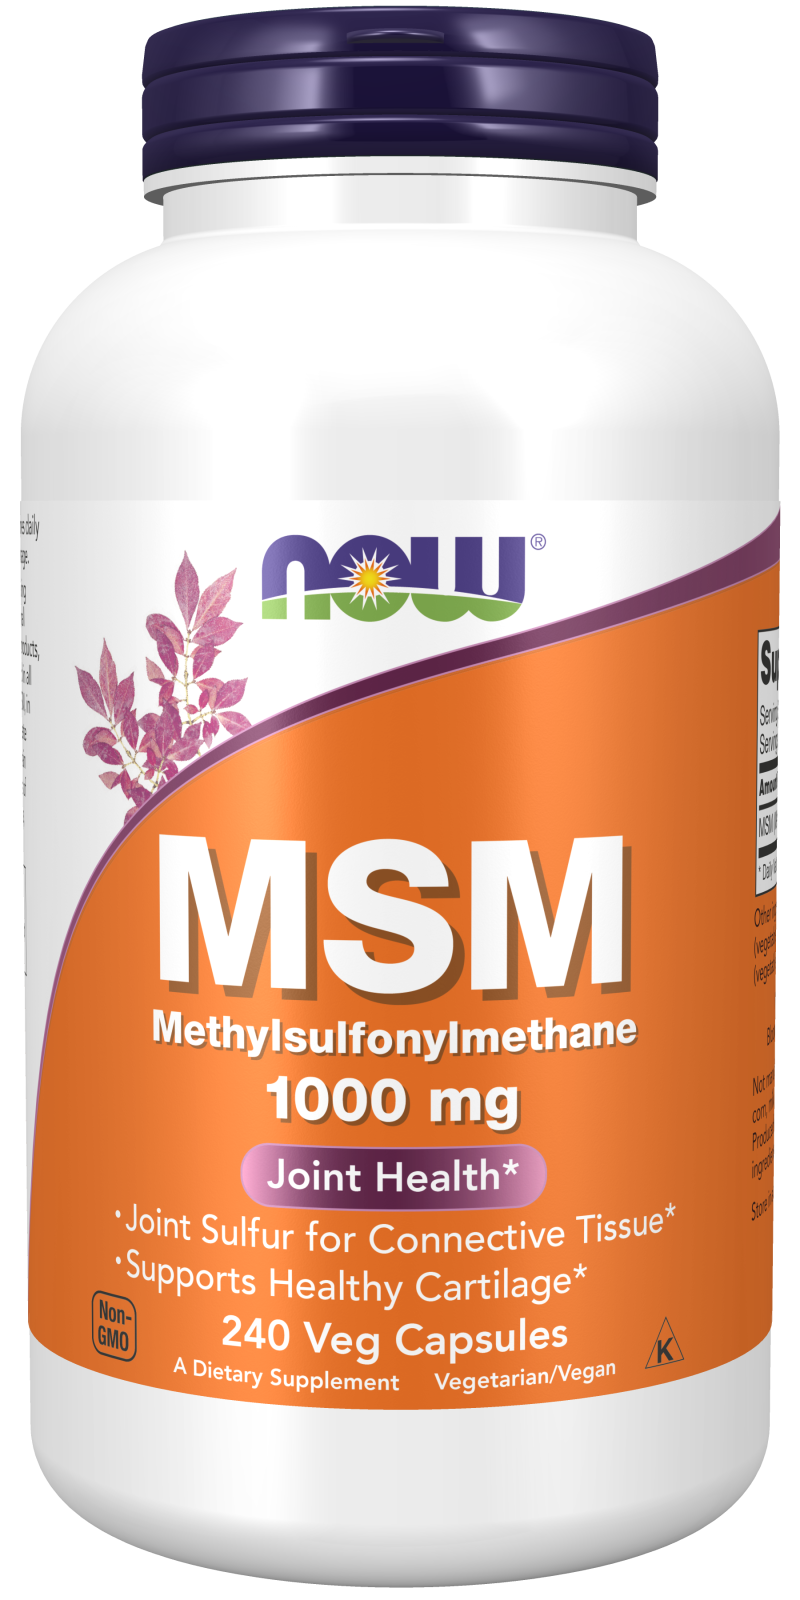 MSM 1000 mg - 240 Veg Capsules Bottle